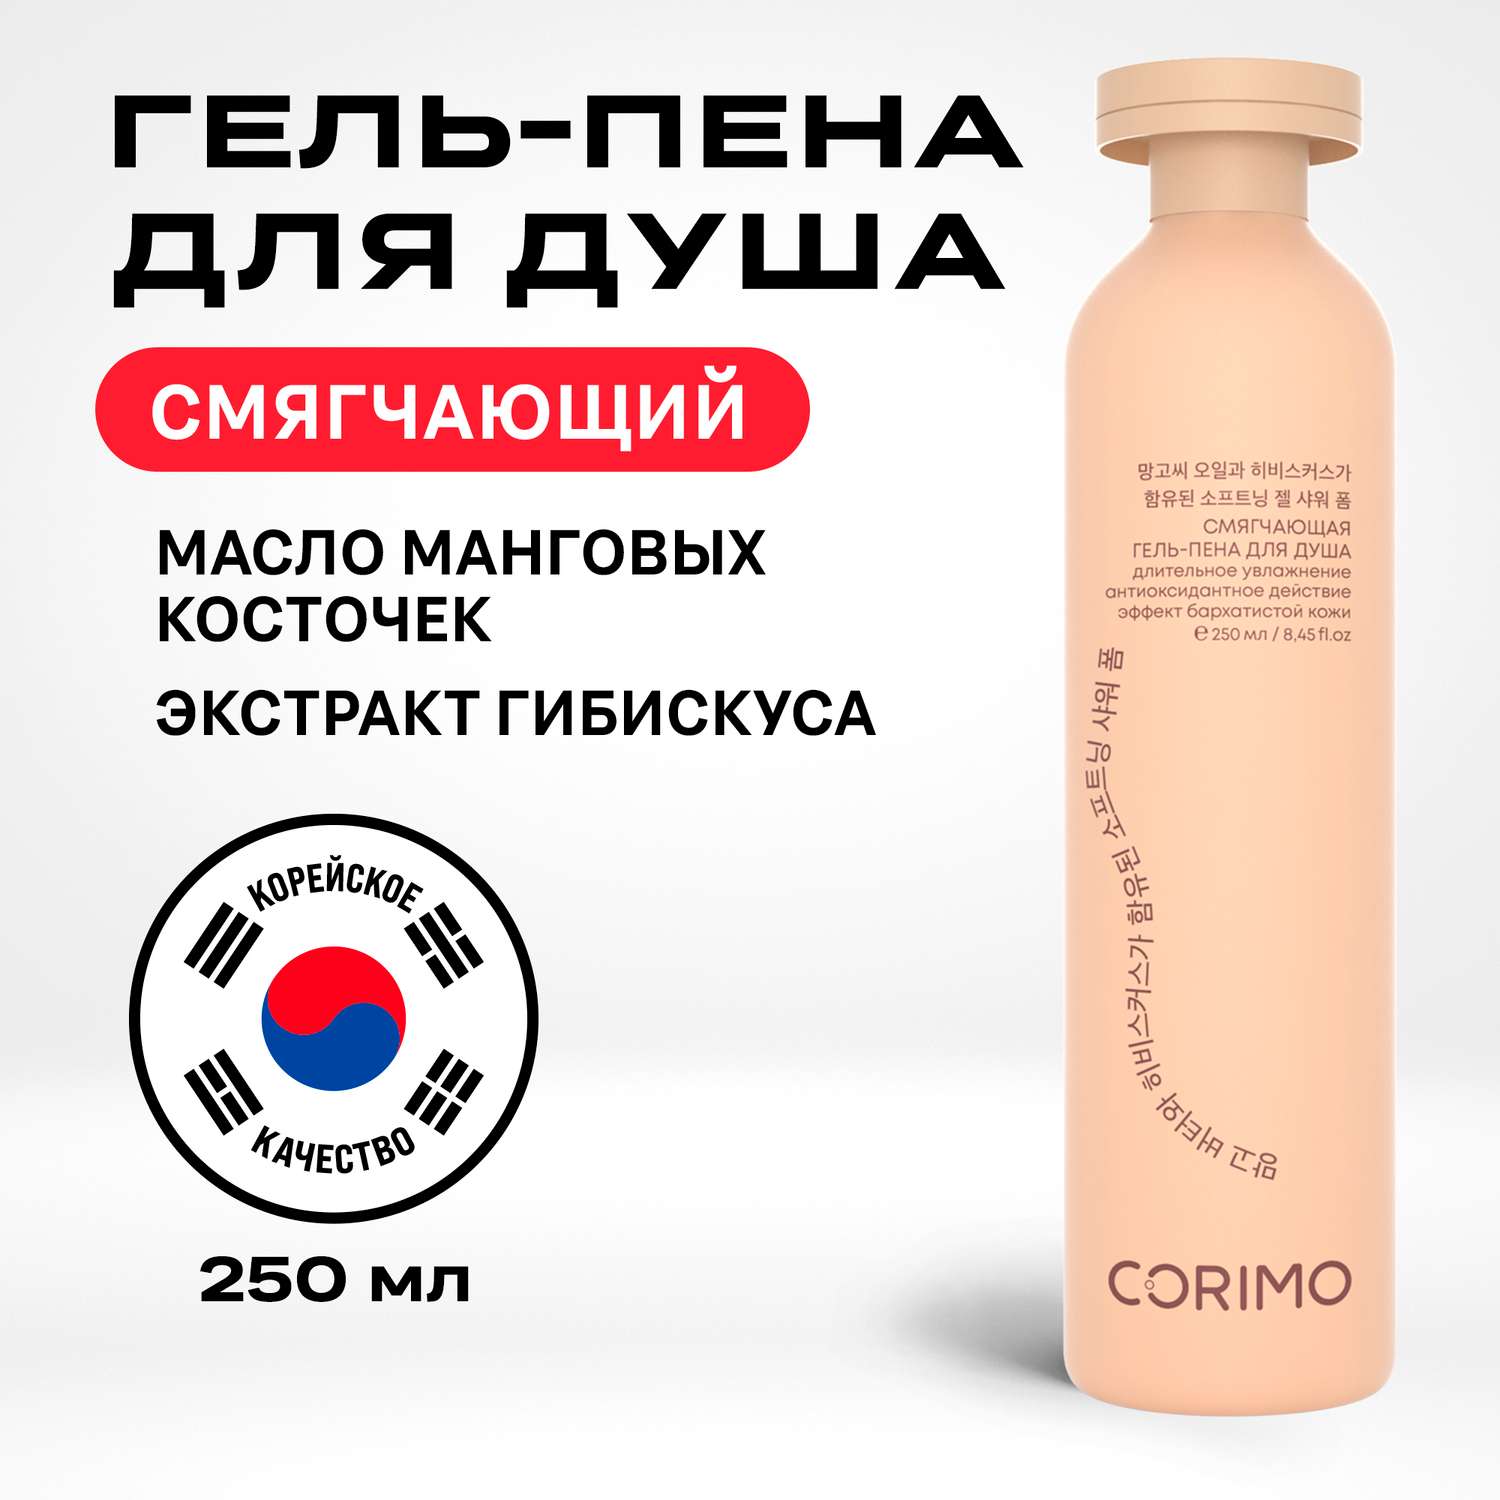 Гель-пена для душа CORIMO смягчающая с маслом манговых косточек и гибискусом 250 мл - фото 1